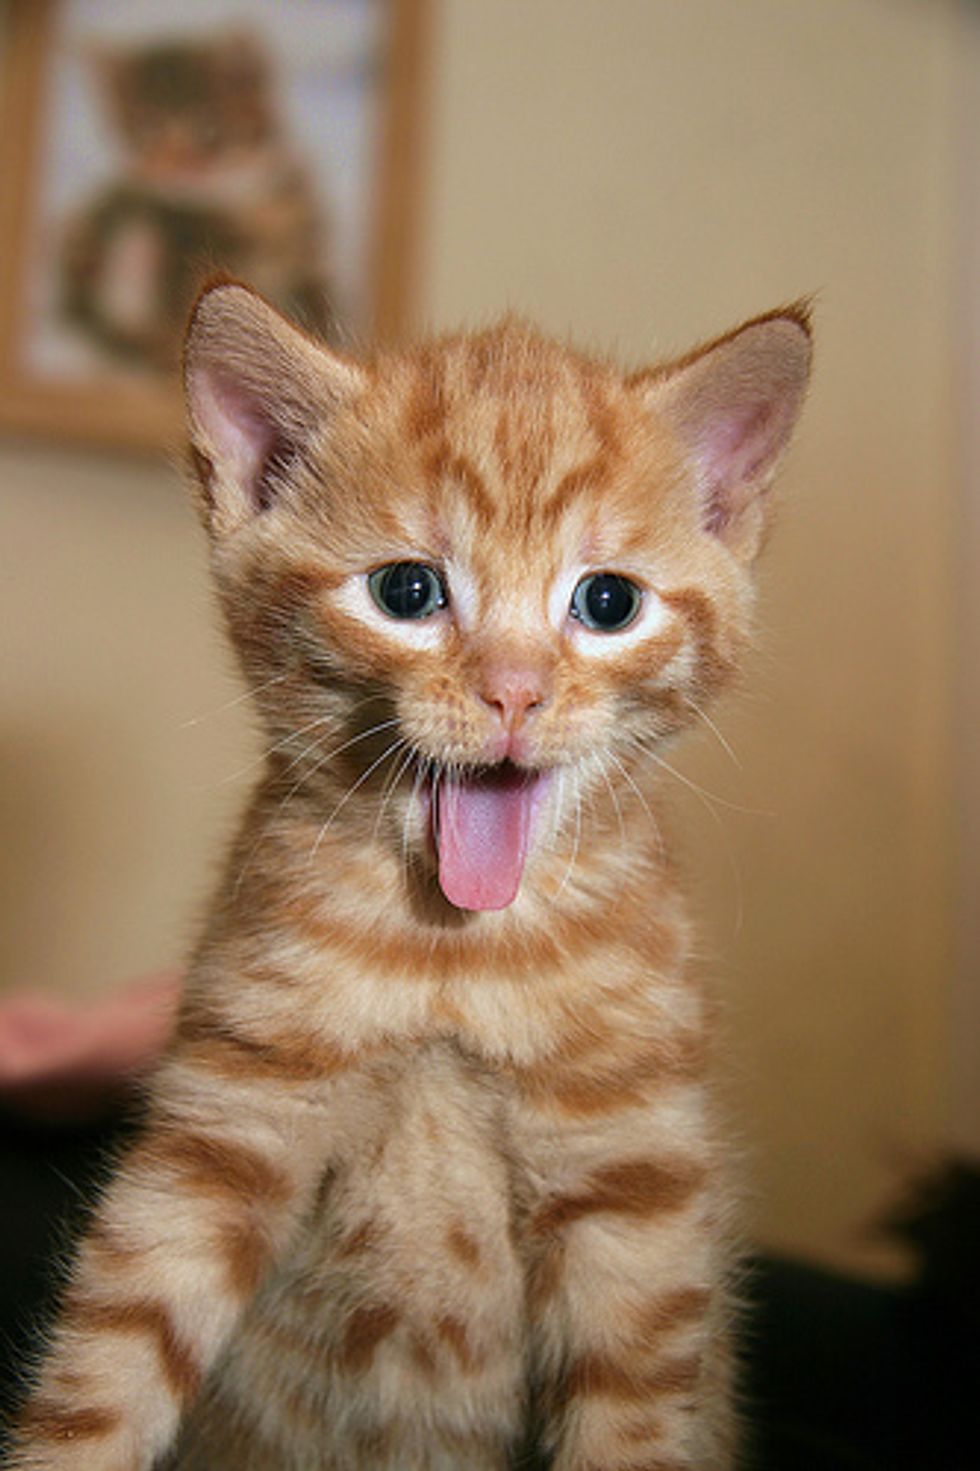 Video: Cute Jumping Kitten